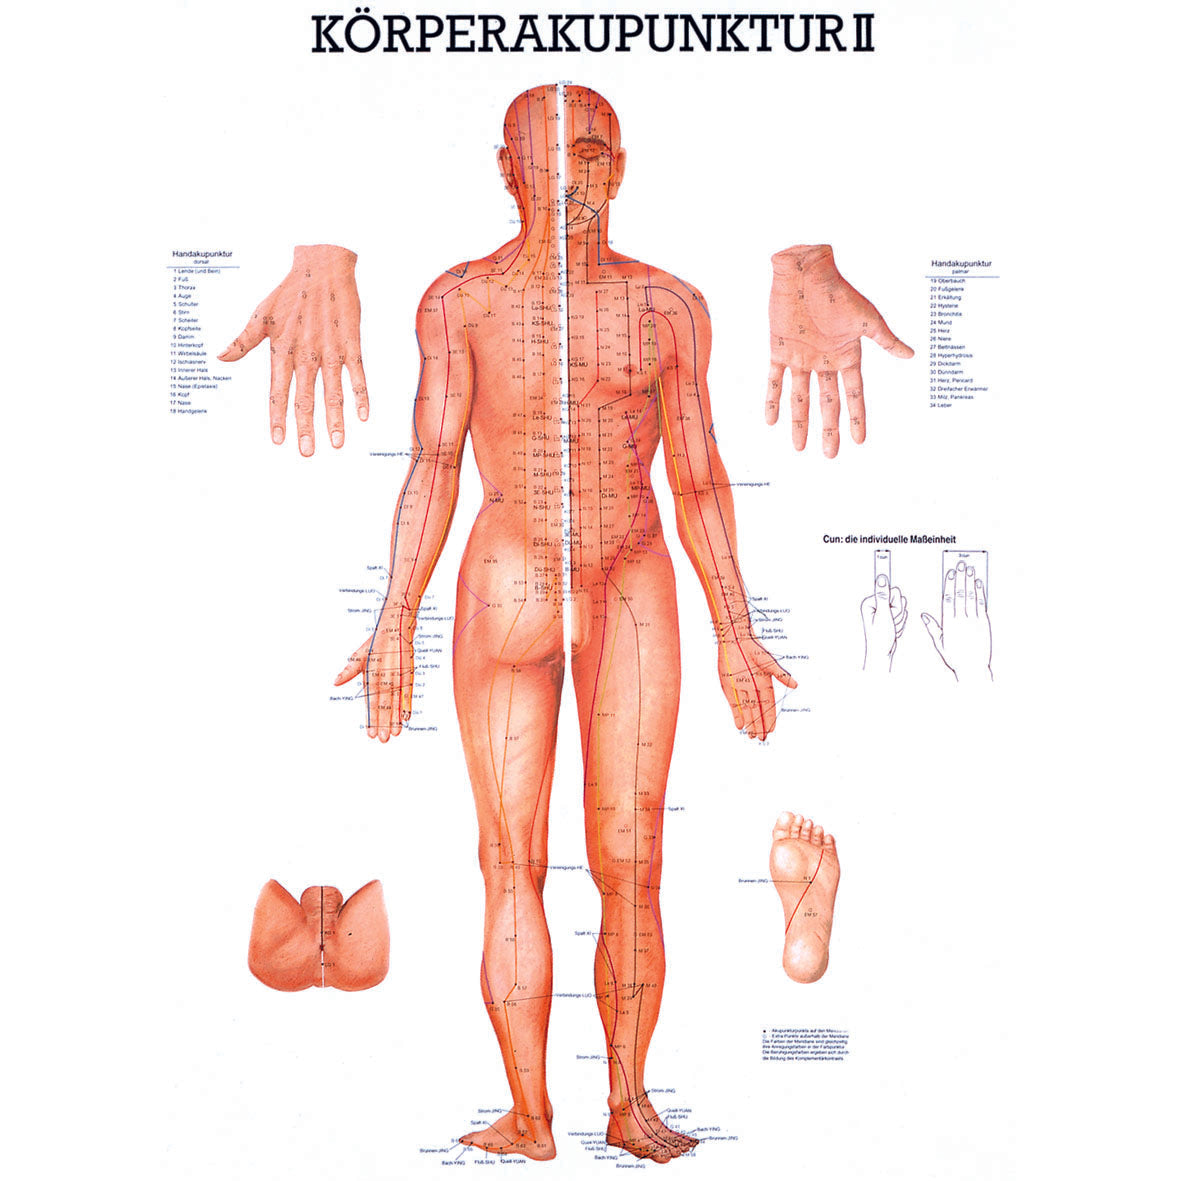 Anatomisches Poster "Körperakupunktur II"